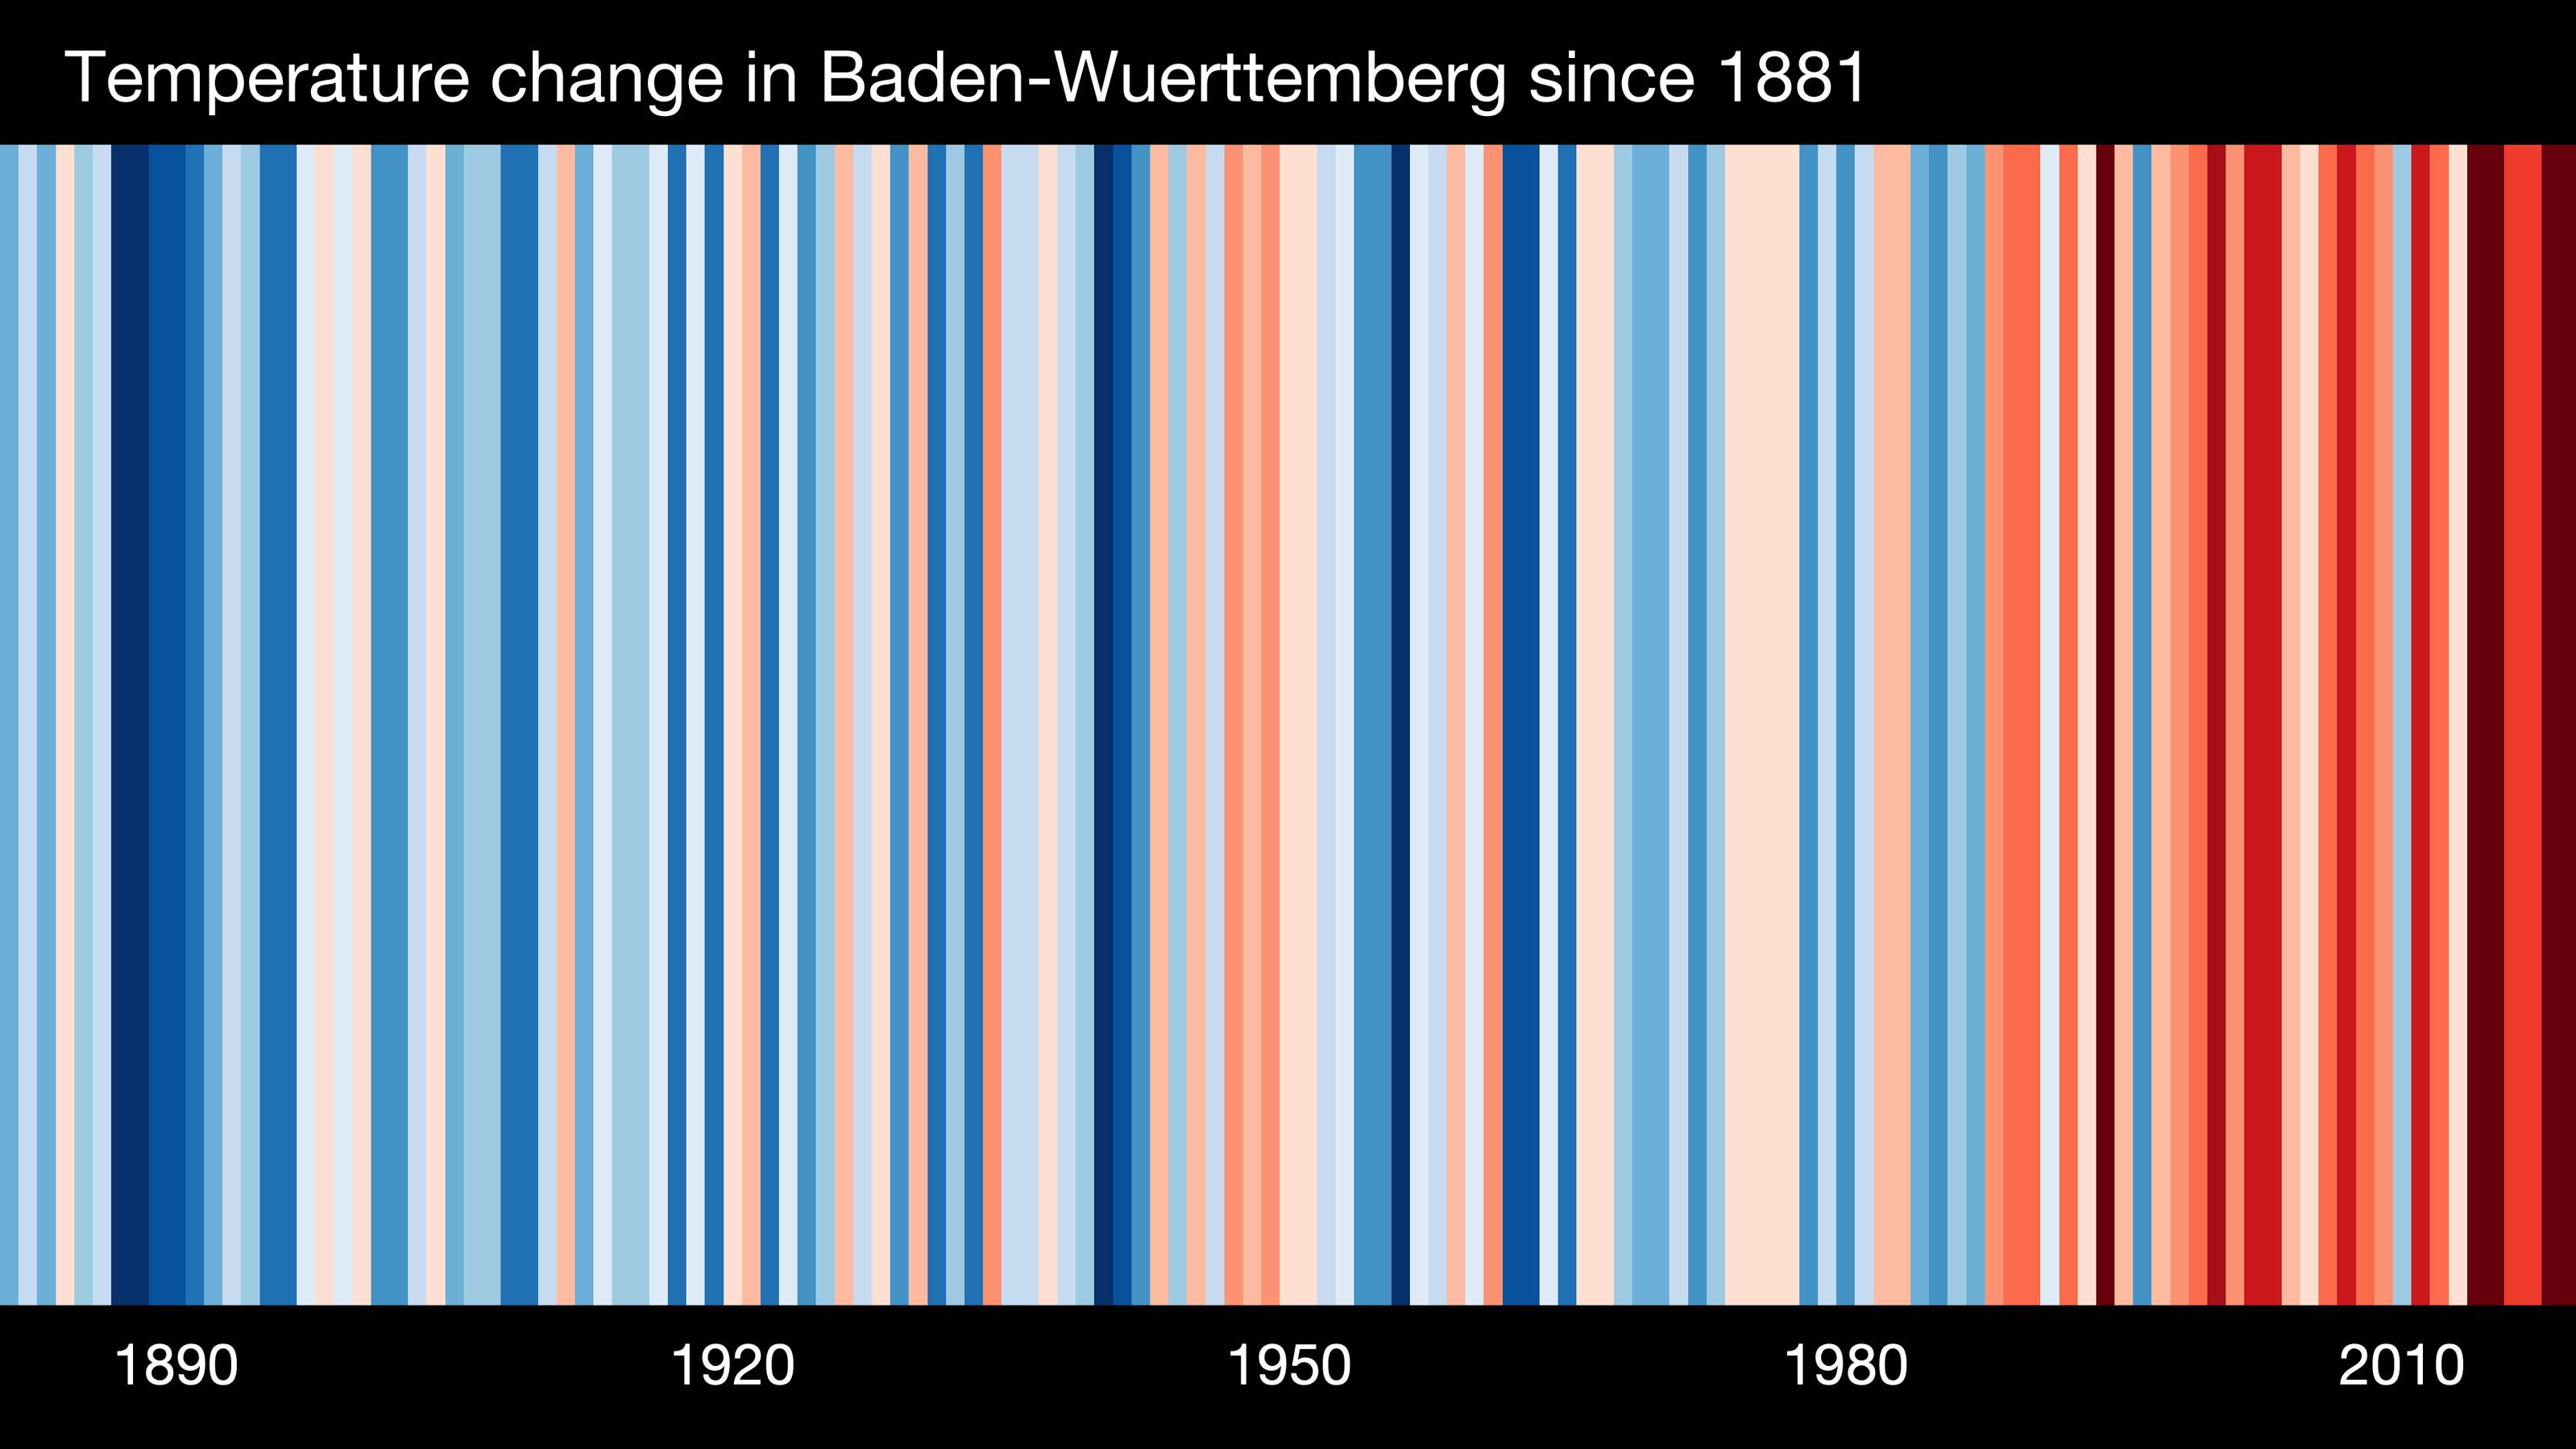 Der Barcode für Baden-Württemberg